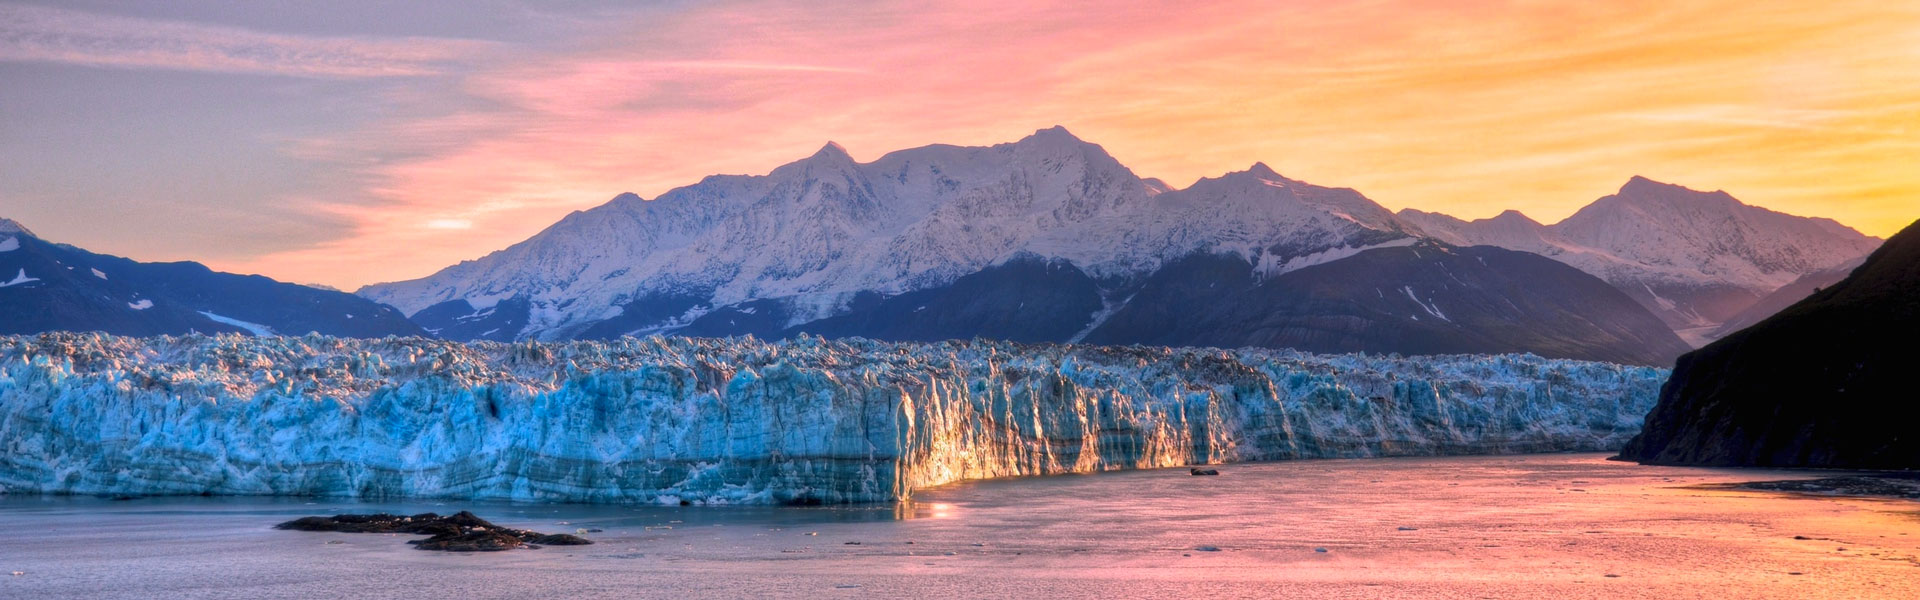 Prince William Sound | Prince William Sound Alaska Glacier at Sunset